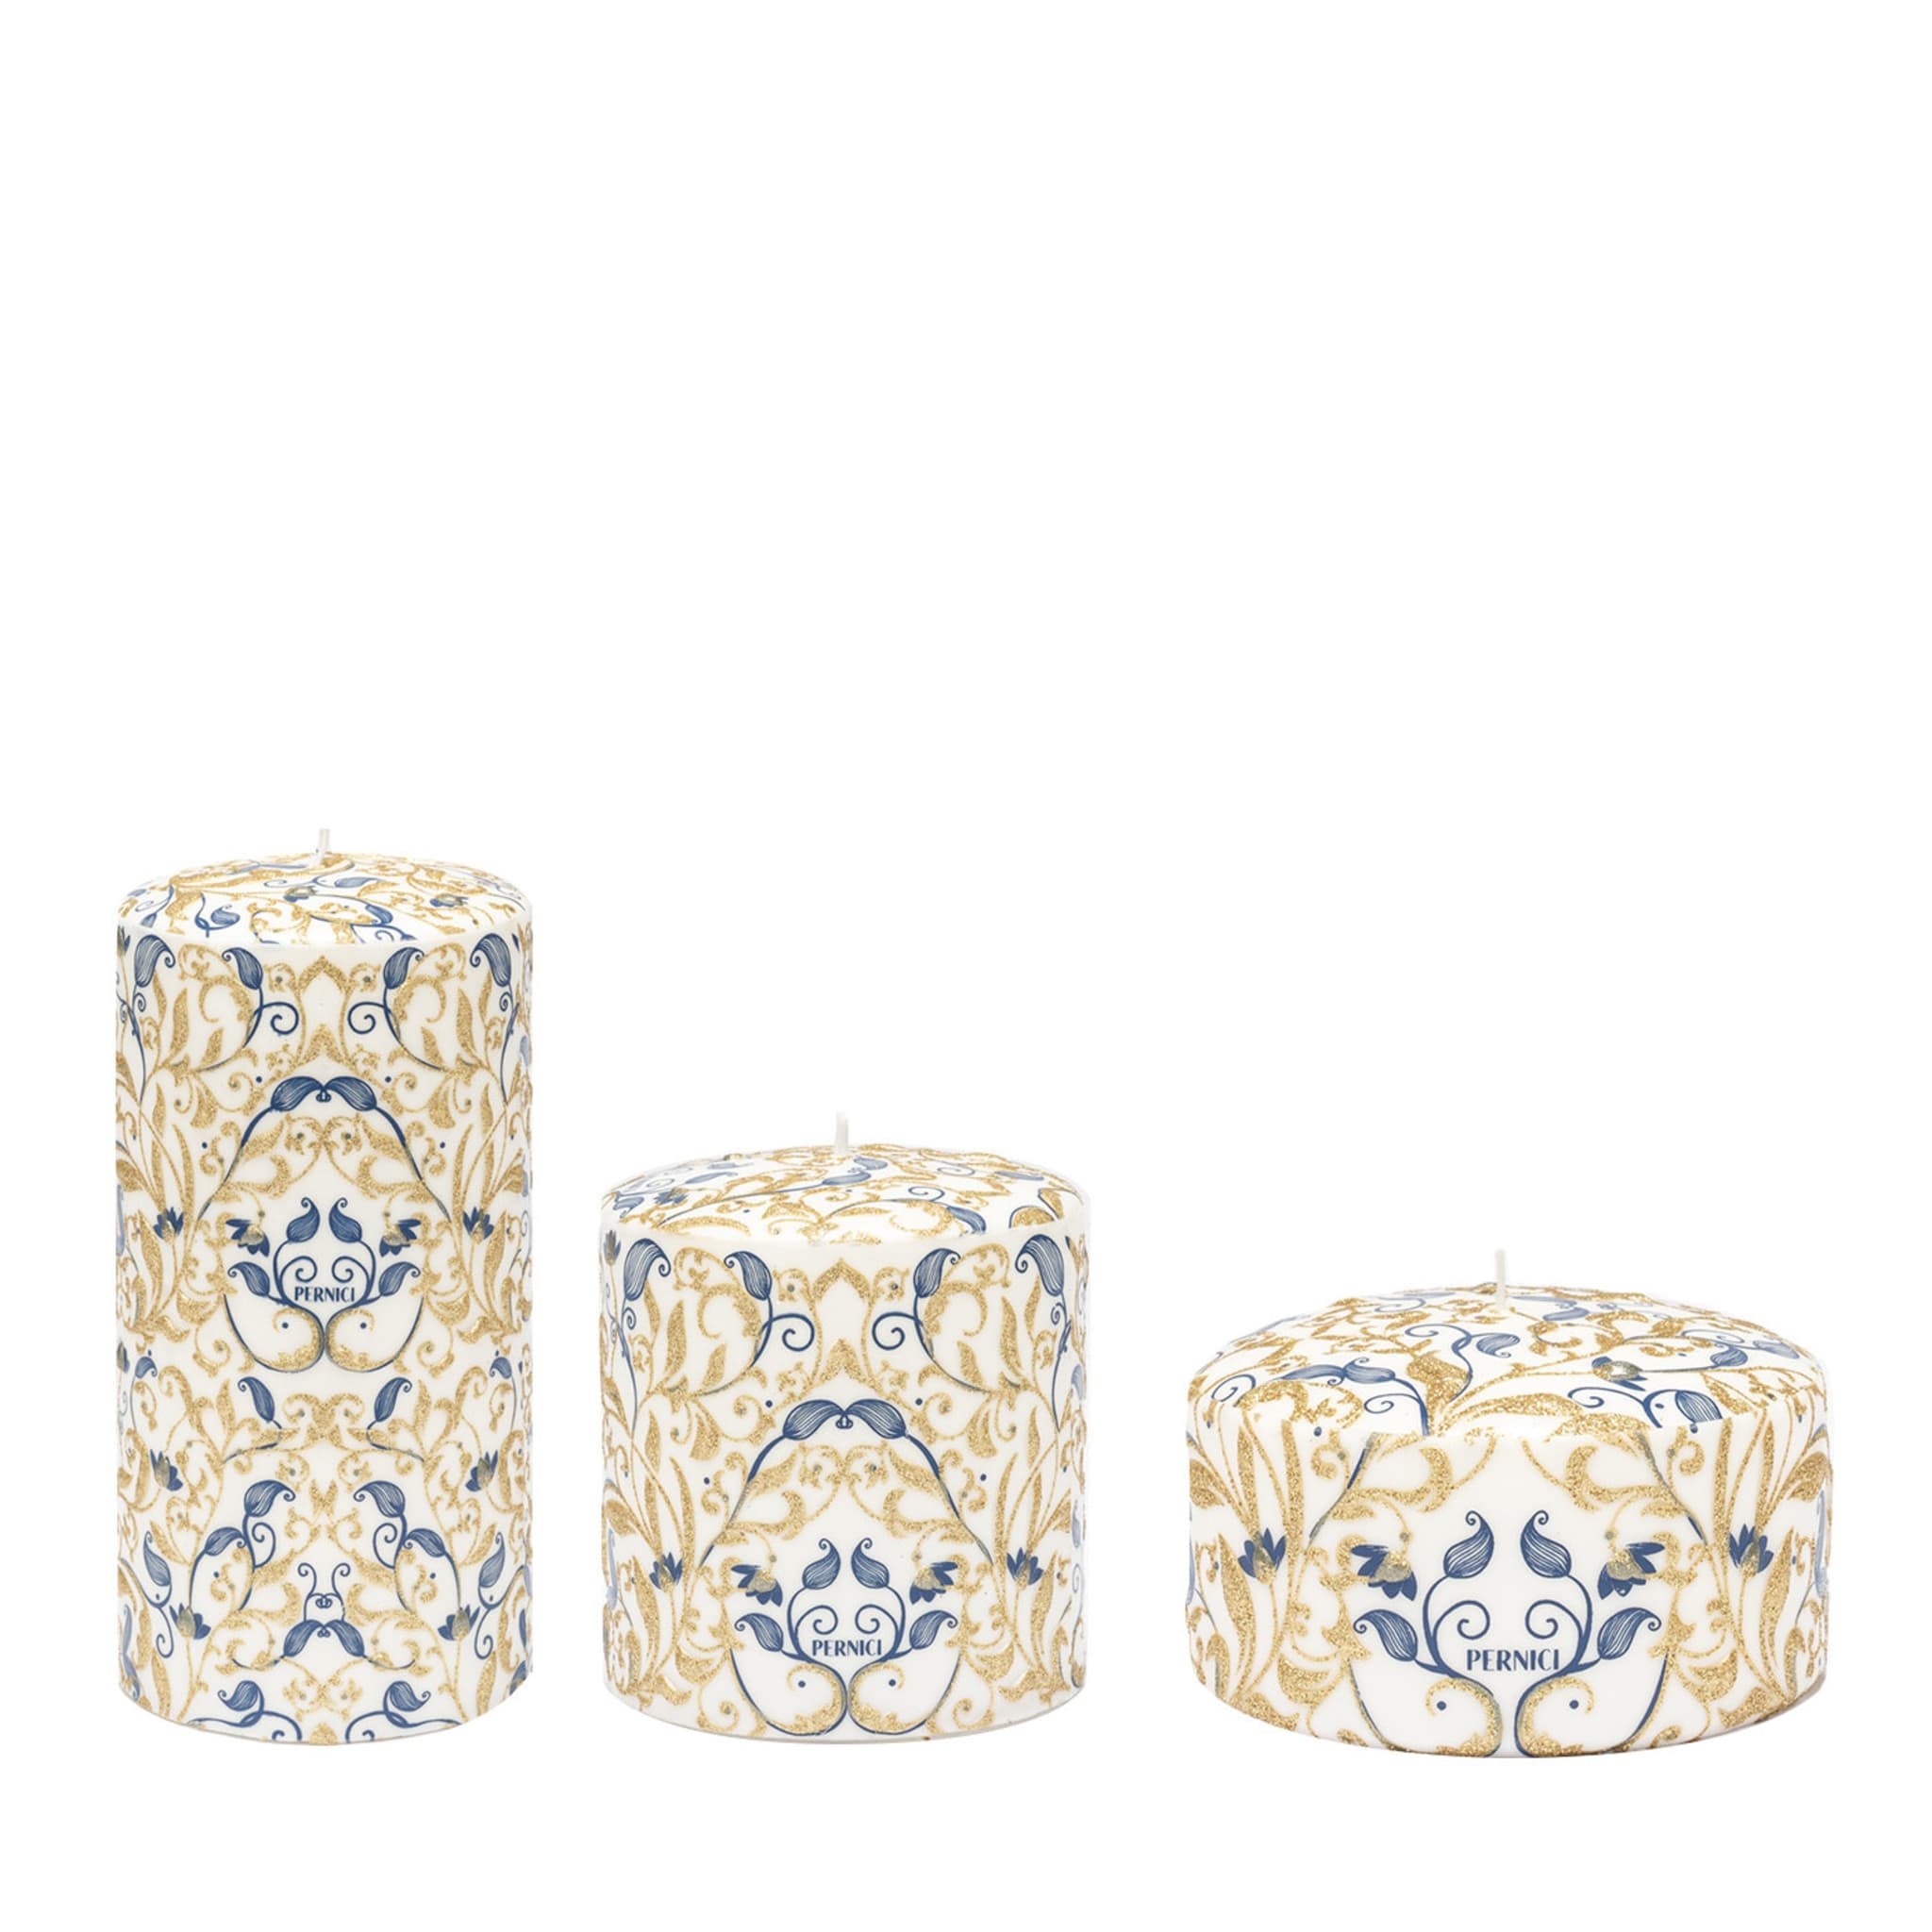 Floreale Set di 3 candele oro e blu - Vista principale